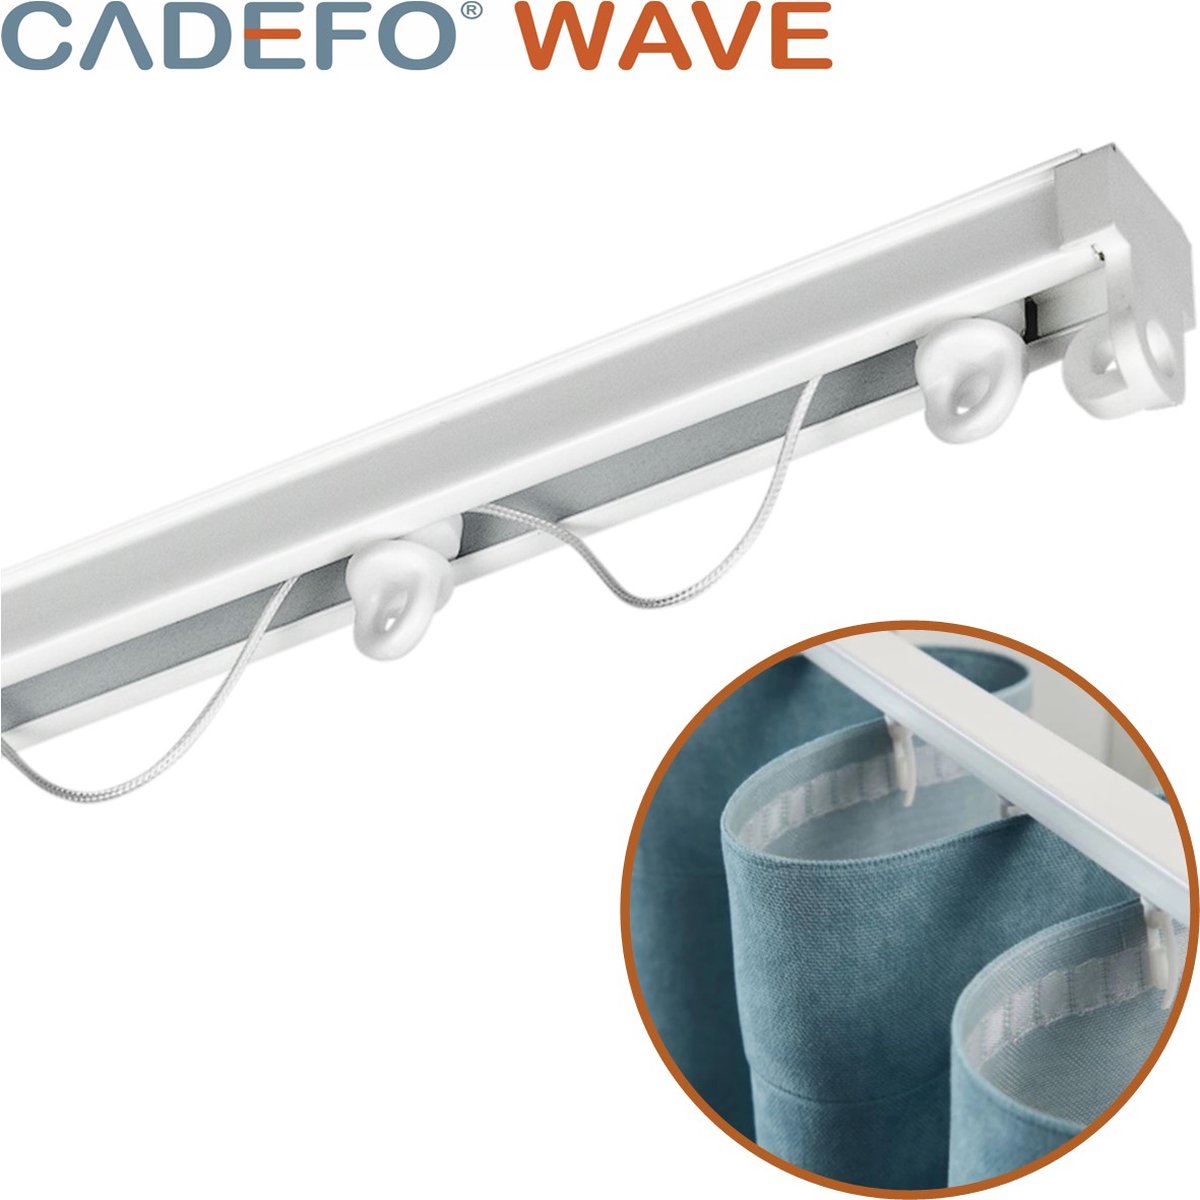 CADEFO WAVE (251 - 300 cm) Gordijnrails - Compleet op maat! - UIT 1 STUK - Leverbaar tot 6 meter - Plafondbevestiging - Lengte 263 cm